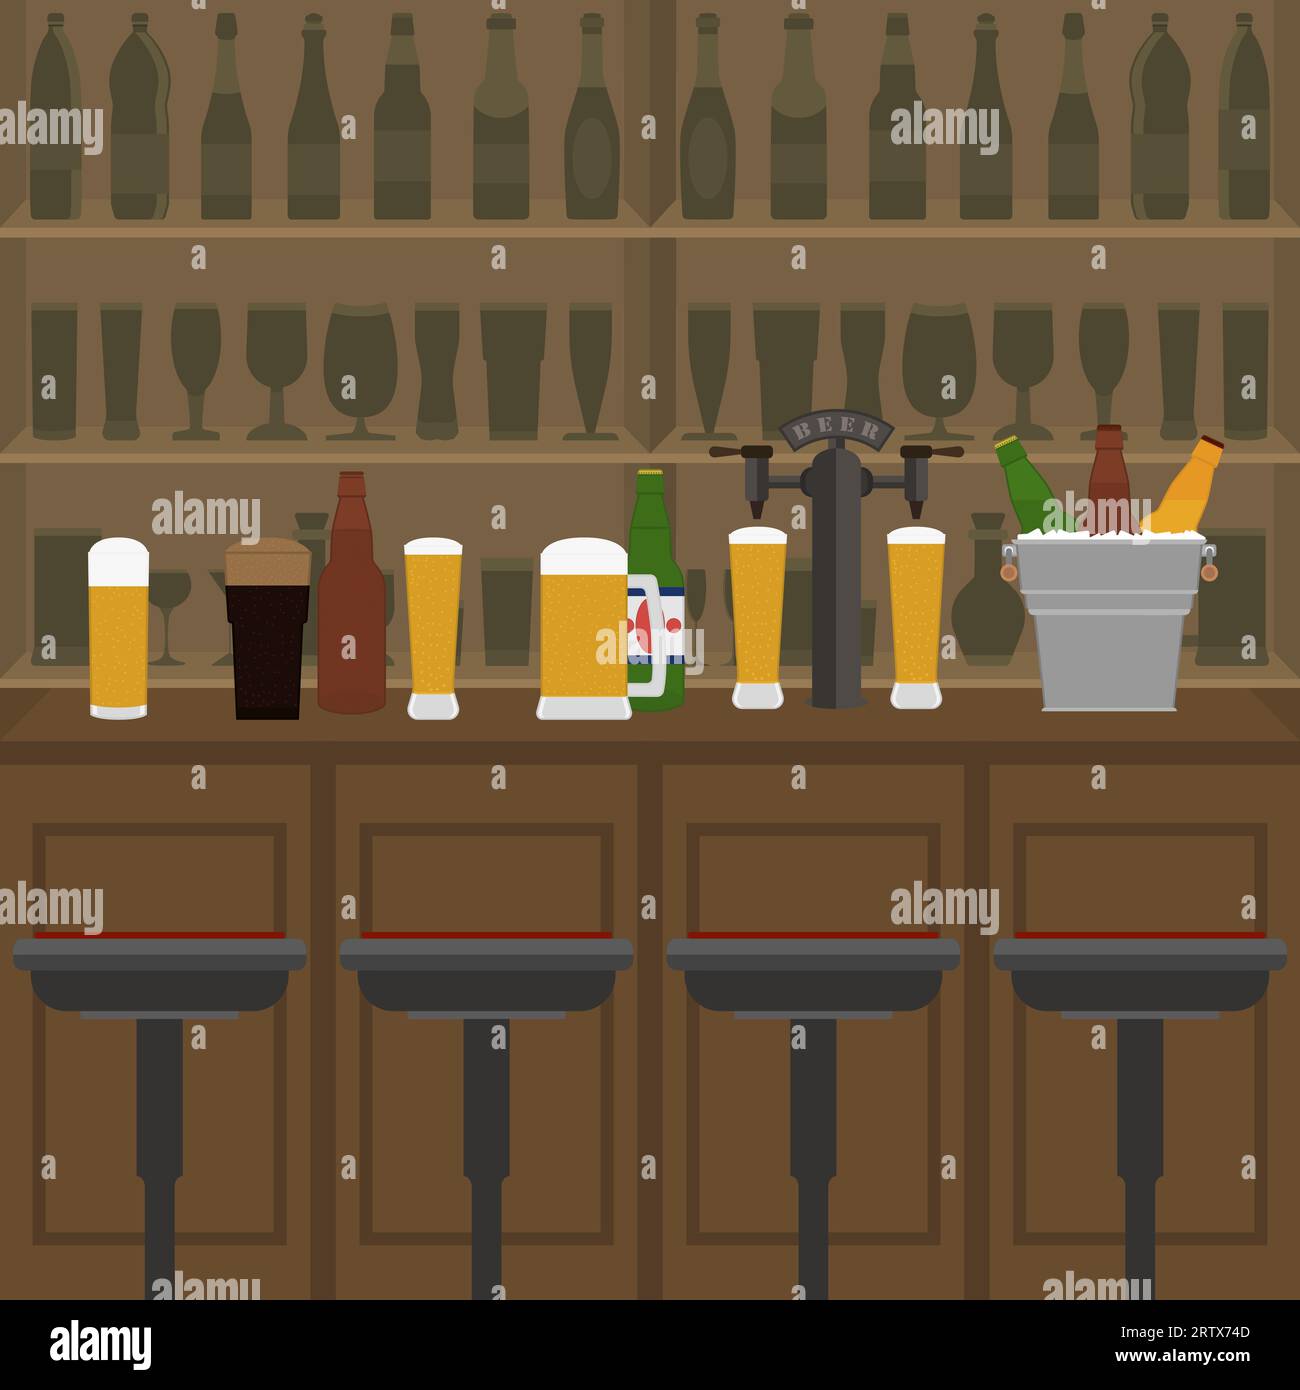 Intérieur de pub, café ou bar avec comptoir, verres de bière, pompe à bière et seau à glace. À l'intérieur de l'établissement de boissons. Comptoir de bar, chaises et étagères wi Illustration de Vecteur